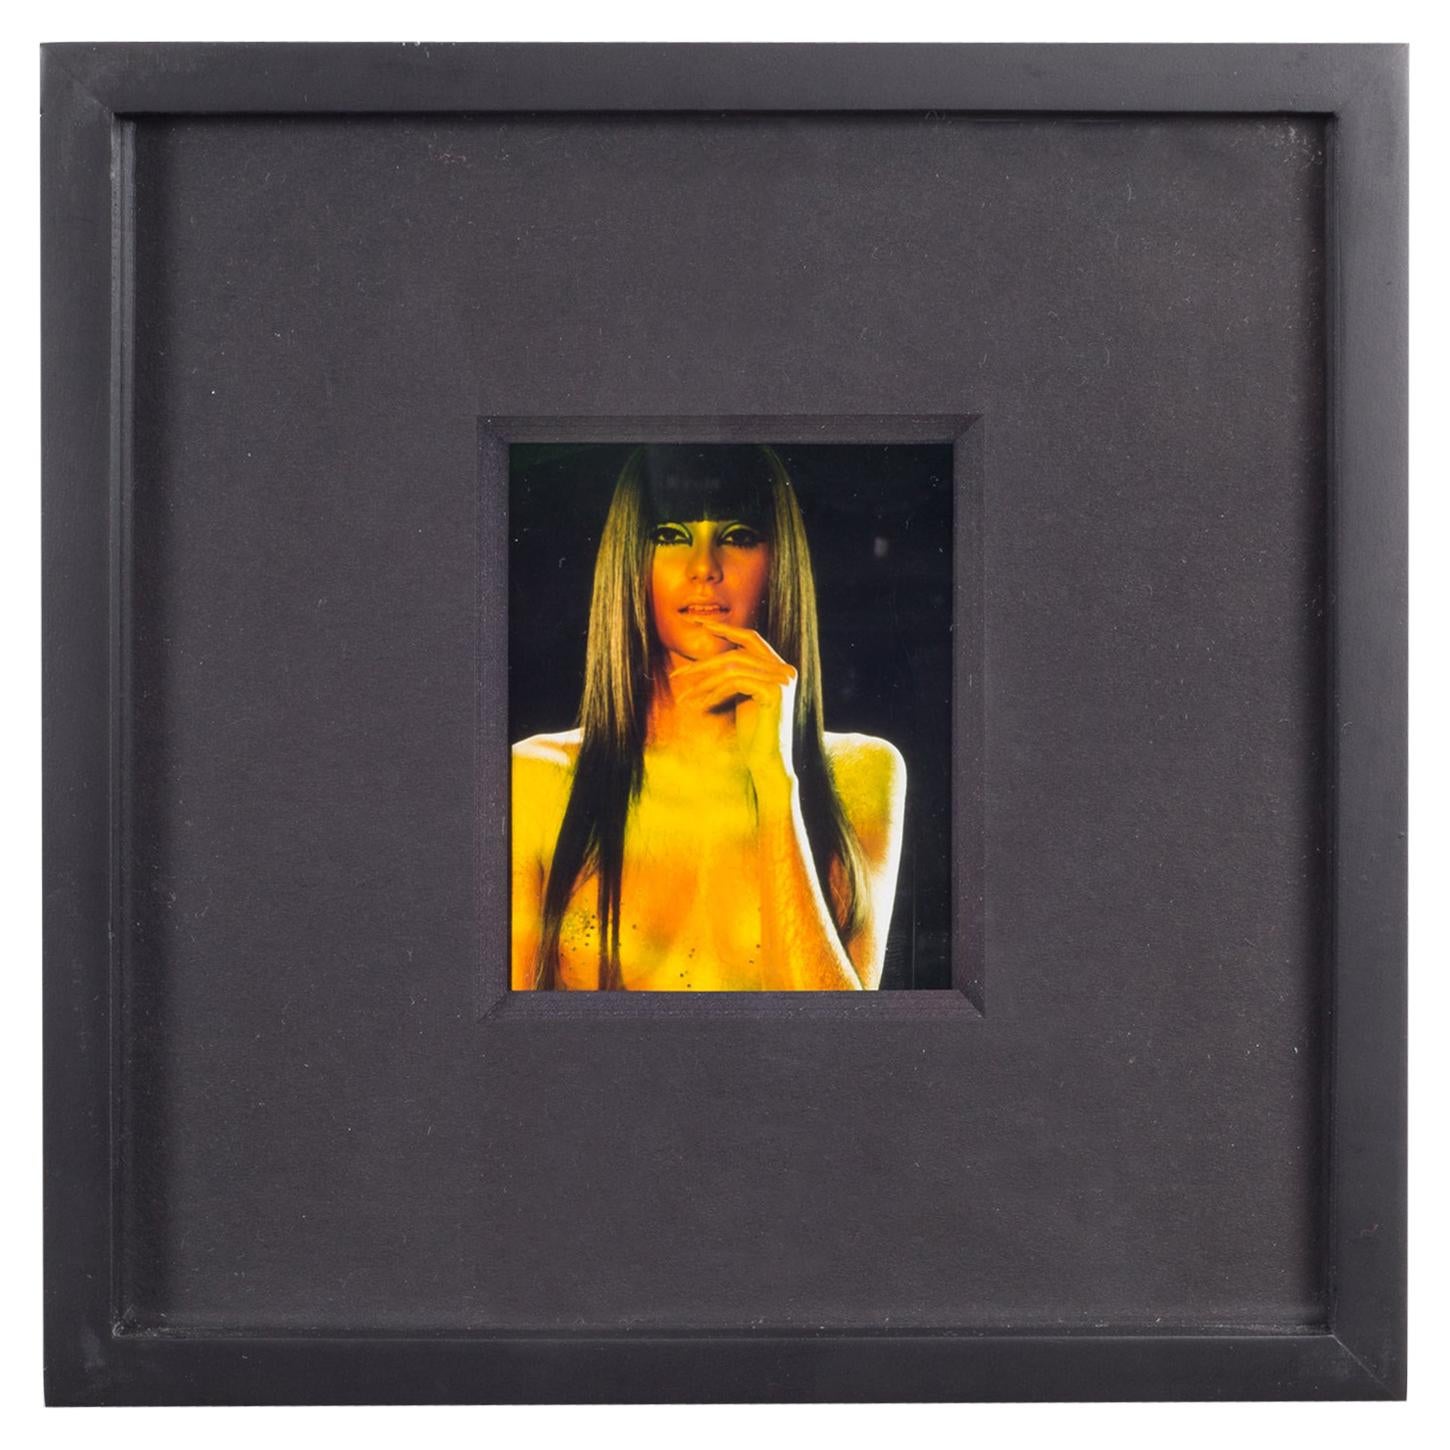 Polaroid Test Image #45 by Denise Tarantino for Dah Len Studios